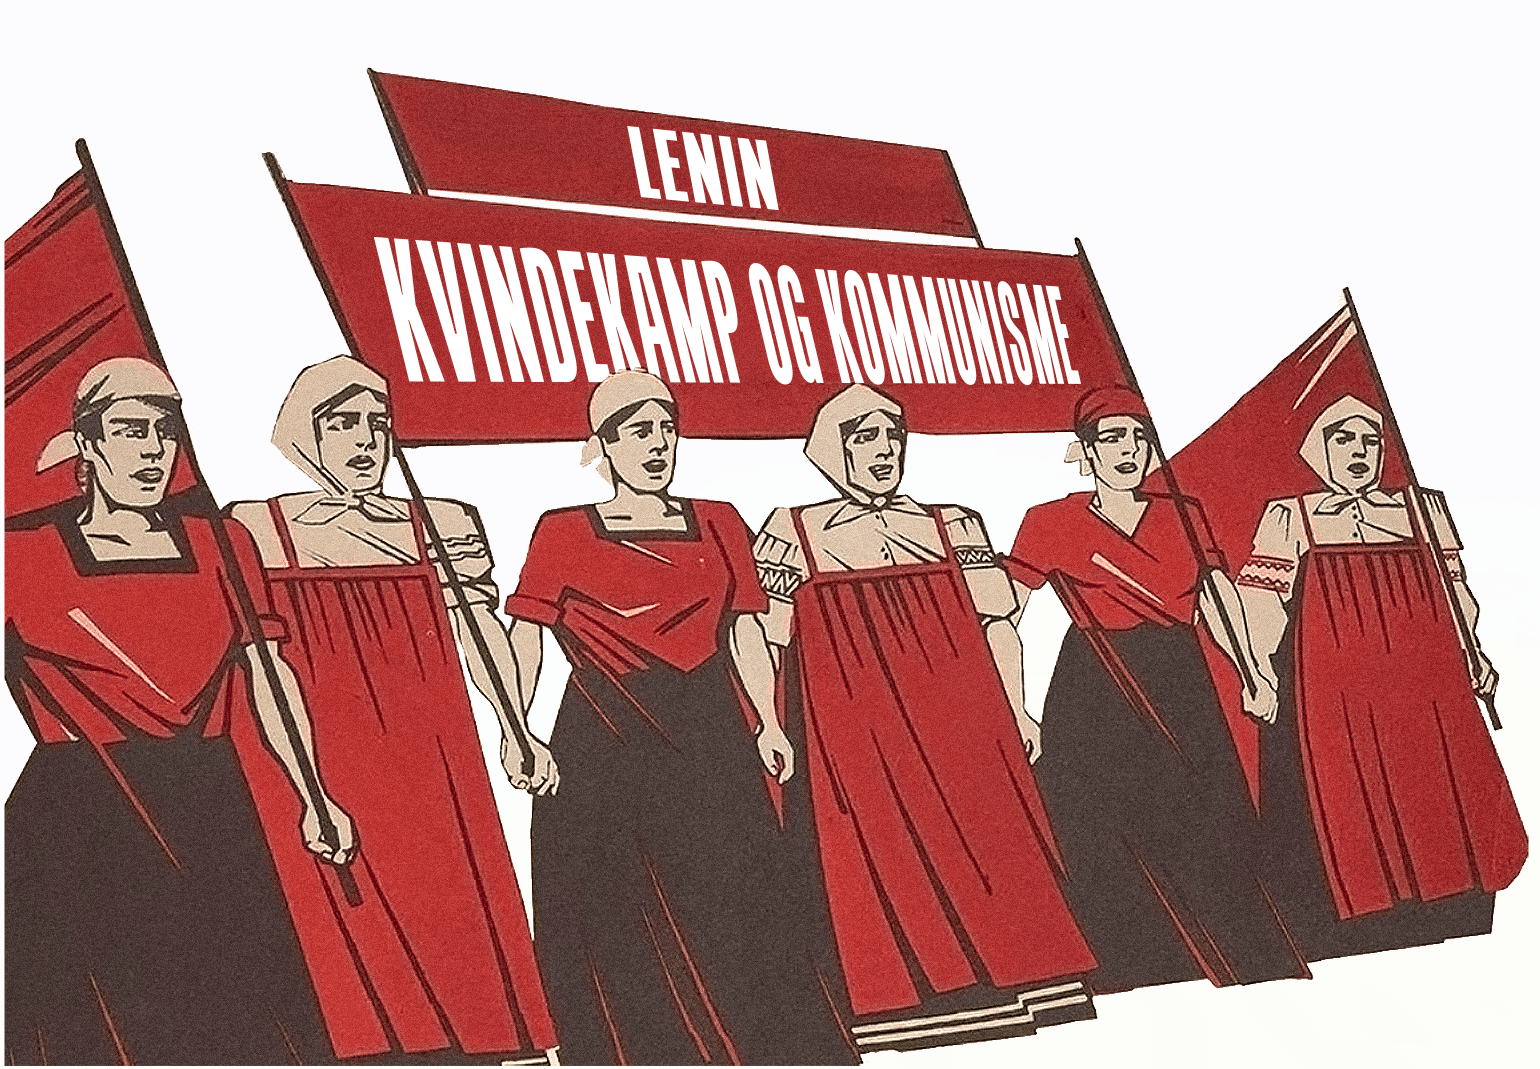 Lenin kvindekamp og kommunisme min